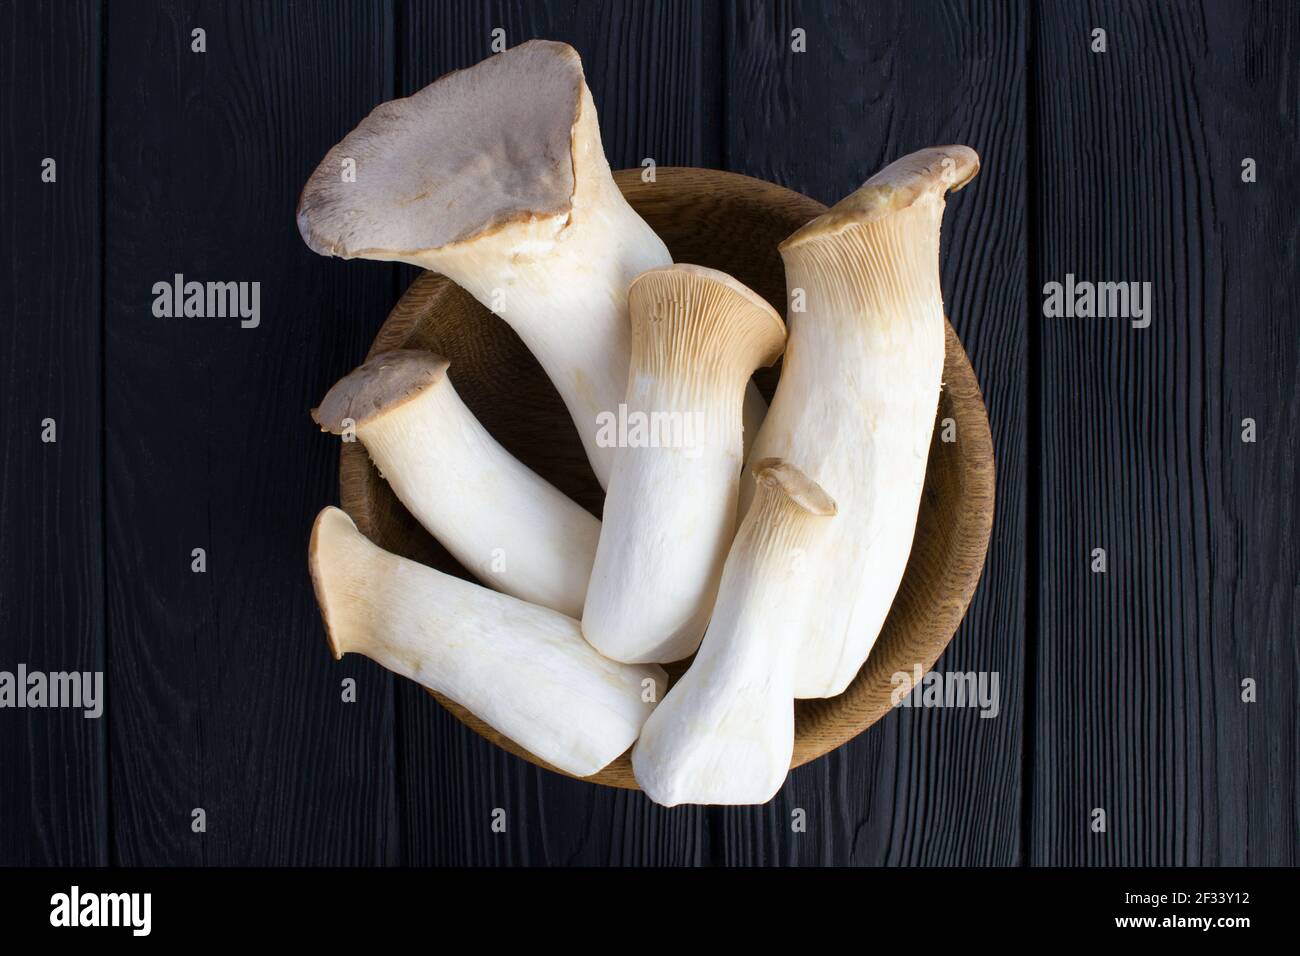 Funghi eringi nella ciotola marrone sullo sfondo di legno nero.Top view.Closeup. Foto Stock